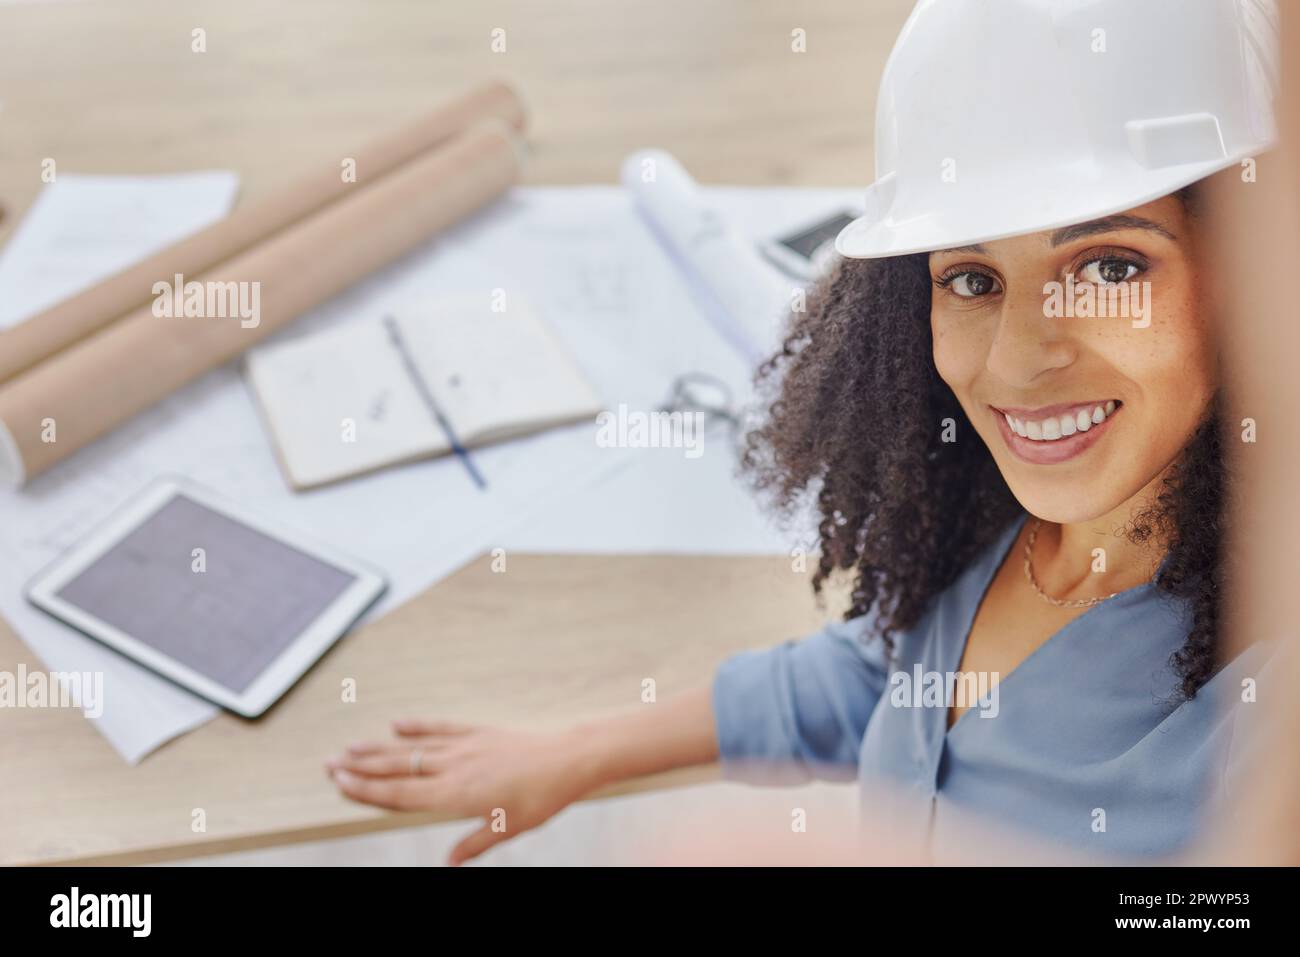 Technik, Architektur oder glückliche schwarze Frau, die ein Selfie macht, nachdem sie einen Grundriss im Bürogebäude gezeichnet hat. Bauingenieurwesen, Gesicht oder Porträt einer Stockfoto